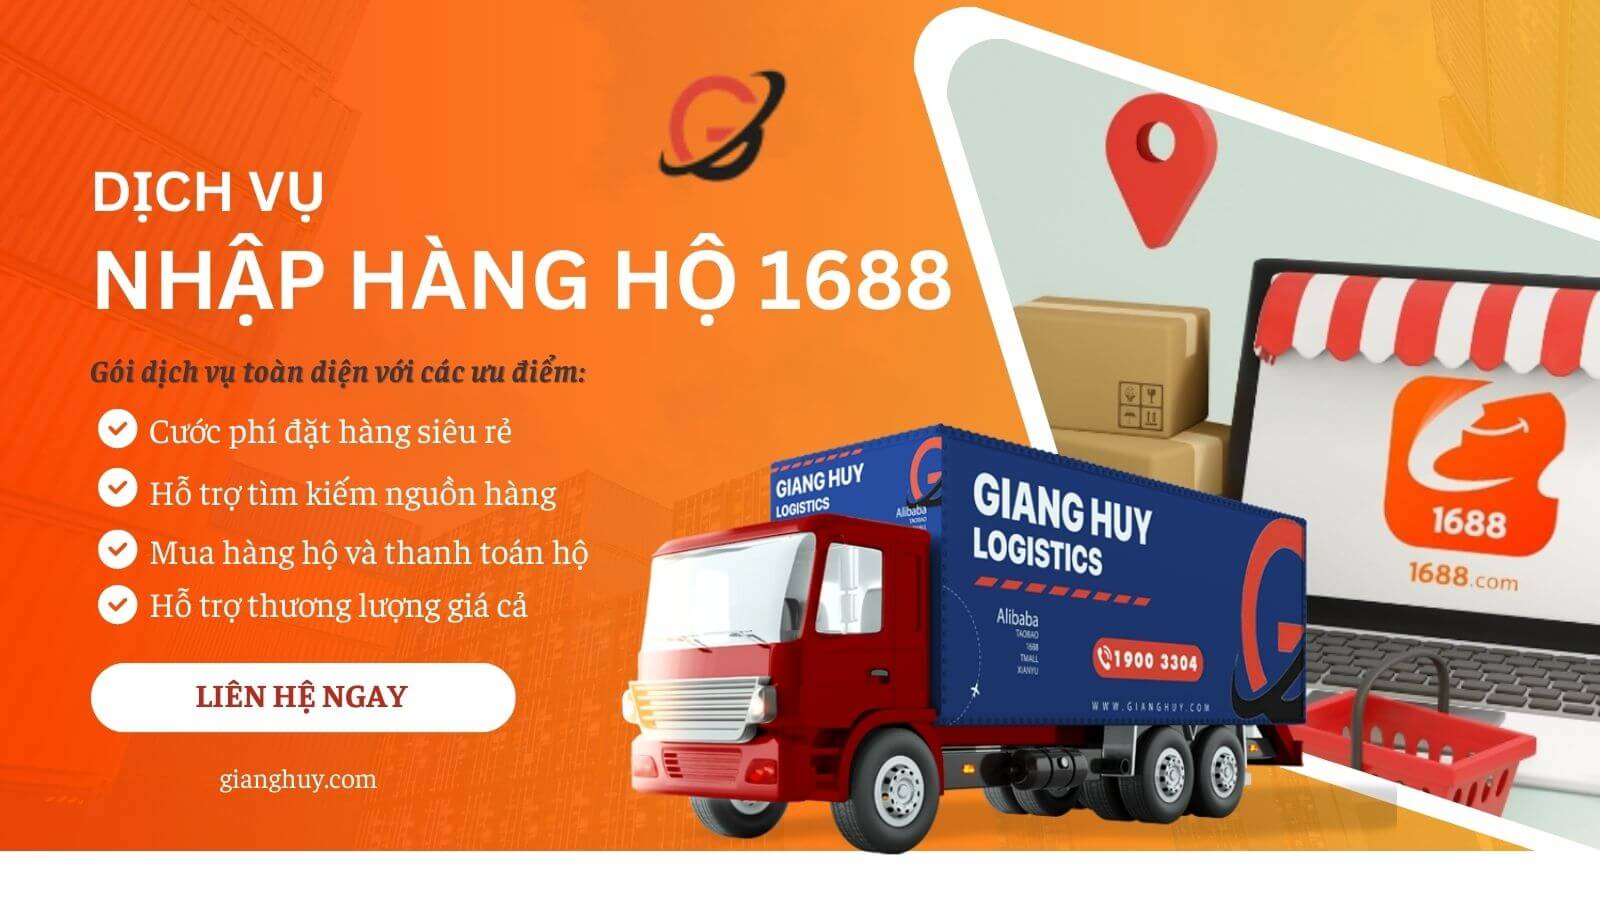 Dịch vụ đặt hàng hộ 1688 uy tín từ Giang Huy Logistics